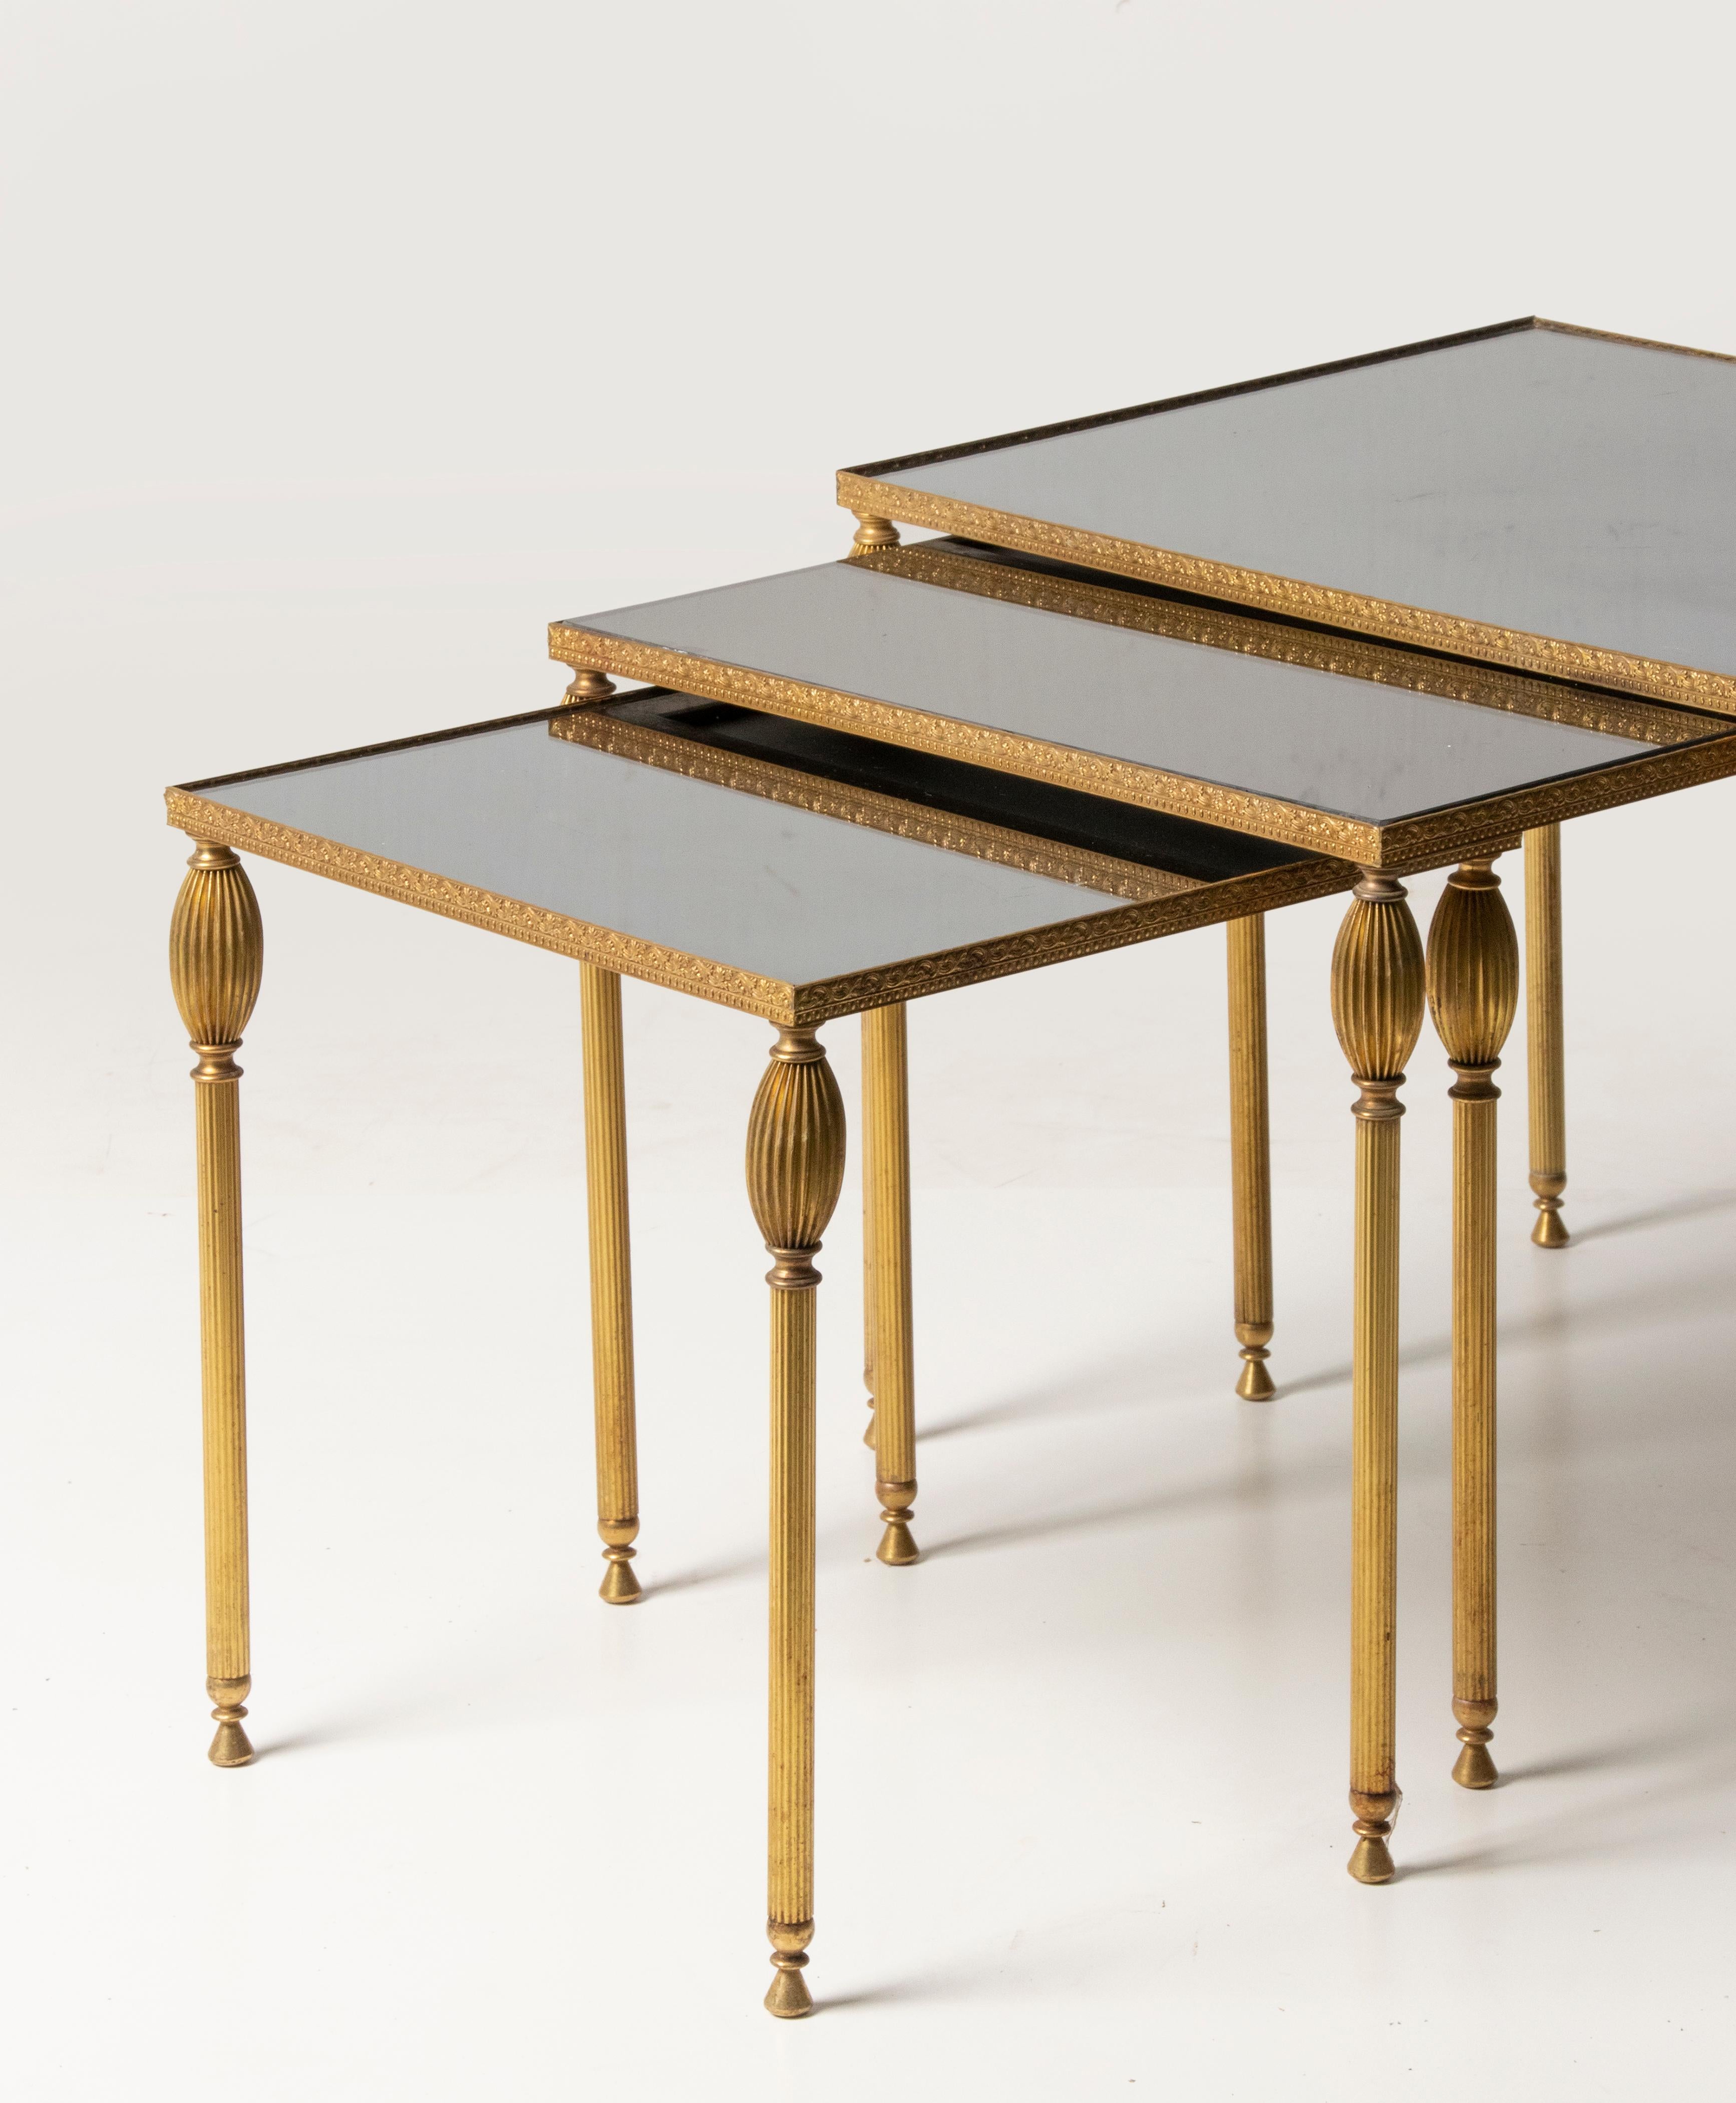 Un ensemble de trois tables d'appoint modernes du milieu du siècle. La base est en métal de couleur cuivre. La garniture en relief est en cuivre. Plaques de verre fumé noir sur le dessus. Les lunettes sont en bon état, quelques petits signes